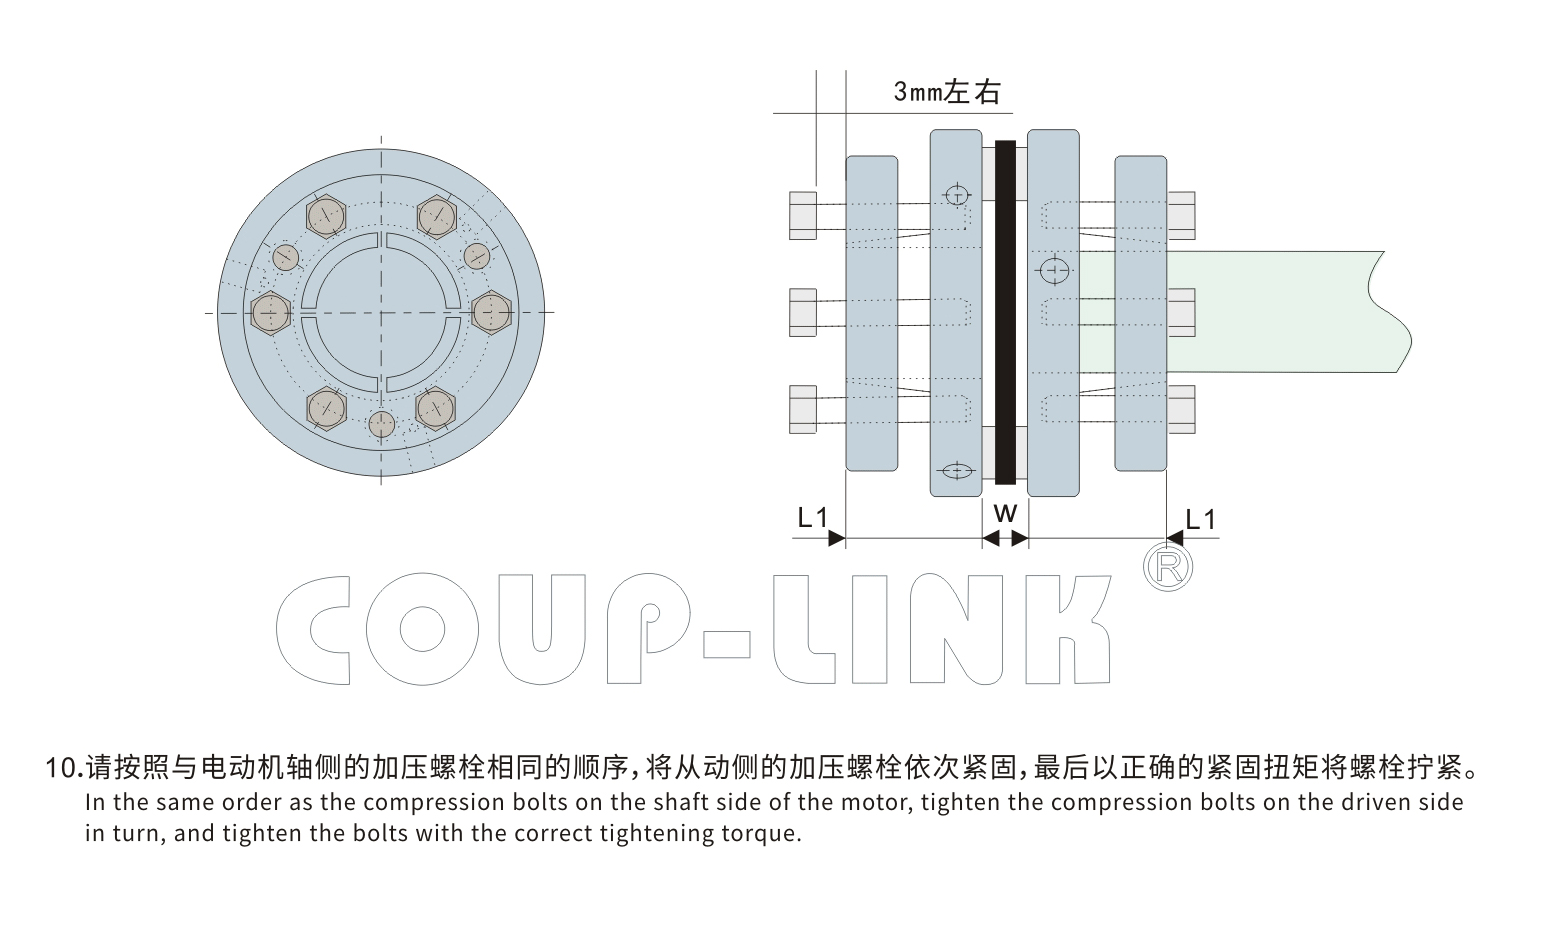 LK15系列 单节胀套膜片联轴器_联轴器种类-广州菱科自动化设备有限公司